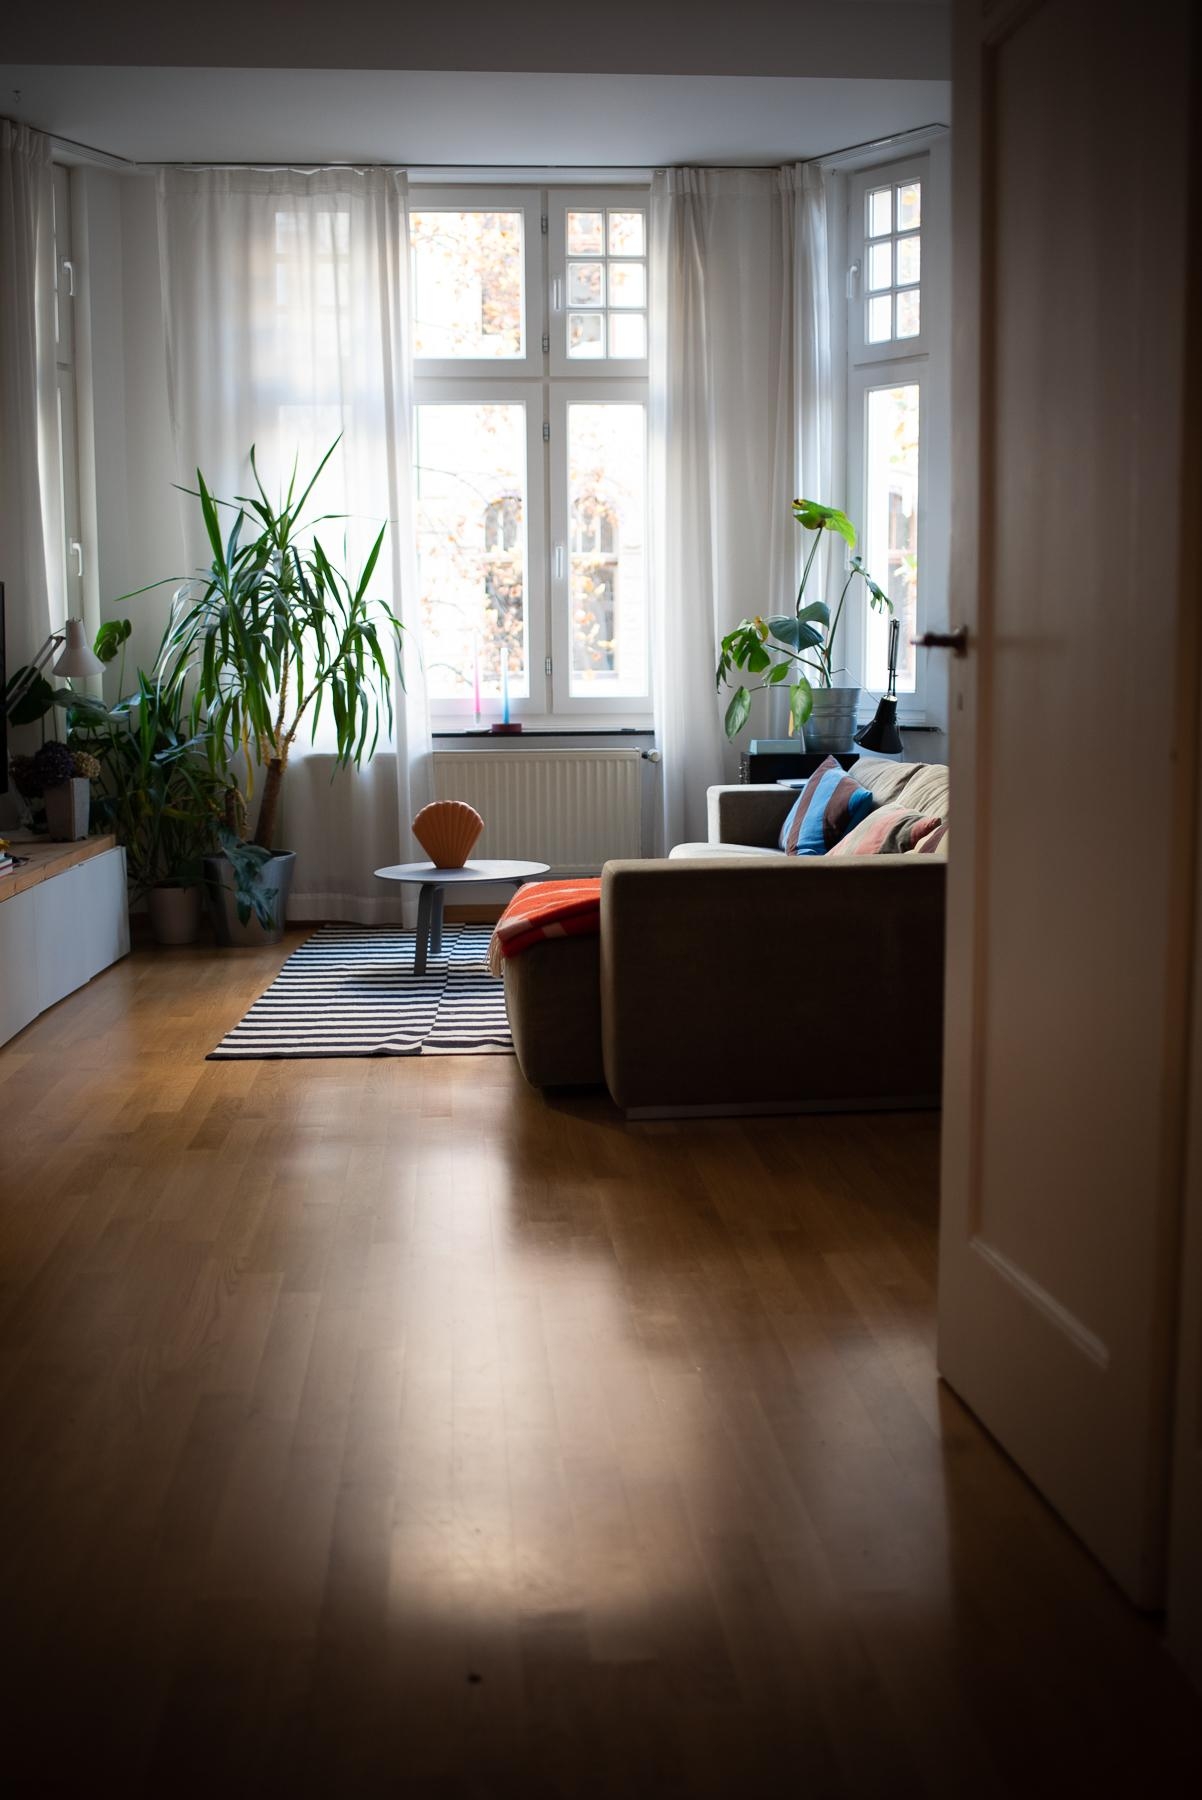 Trister Dezembermorgen. Habts trotzdem schön! #livingroom #wohnzimmer #interiorstyle #altbau #altbauliebe #interior 